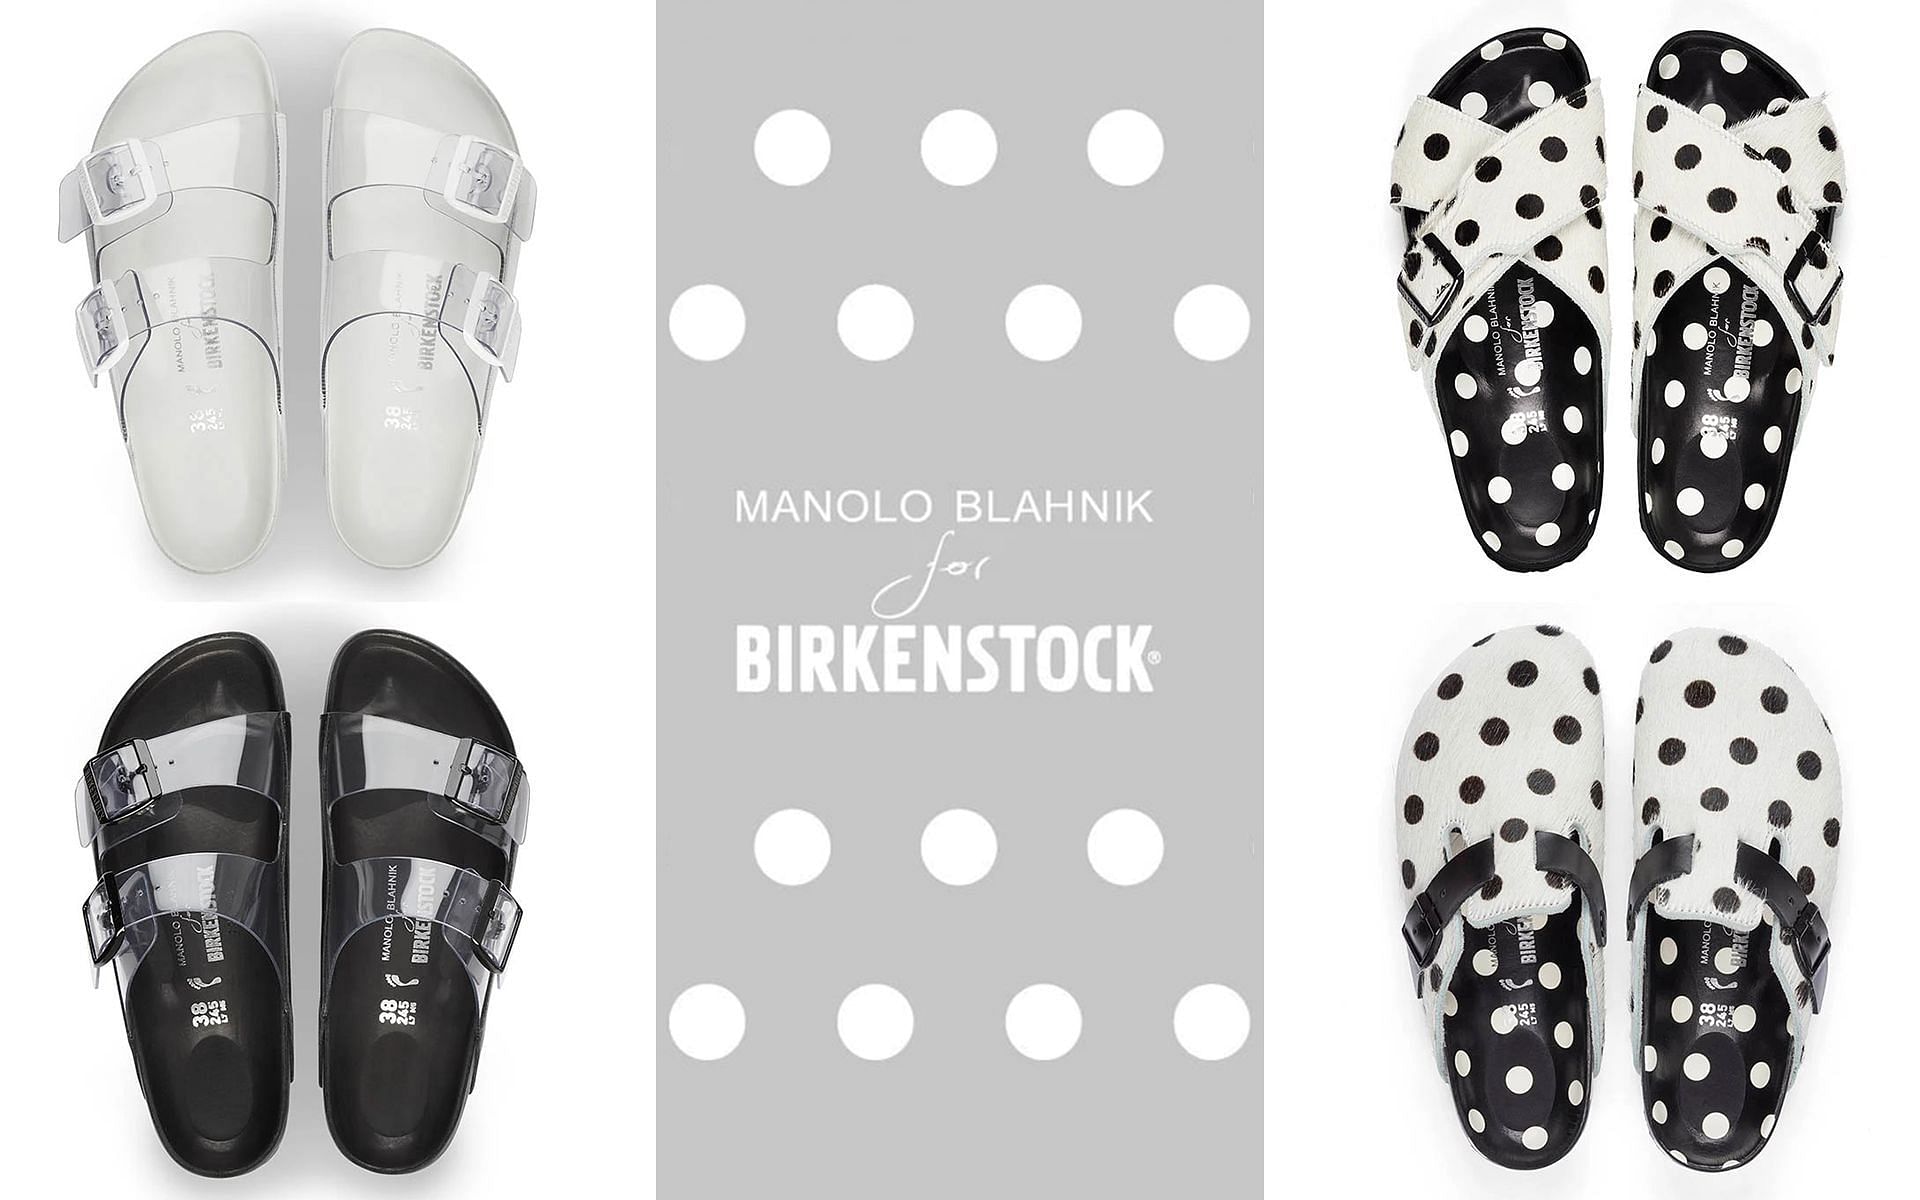 Manolo Blahnik x Birkenstock drop 2 (Image via Sportskeeda)